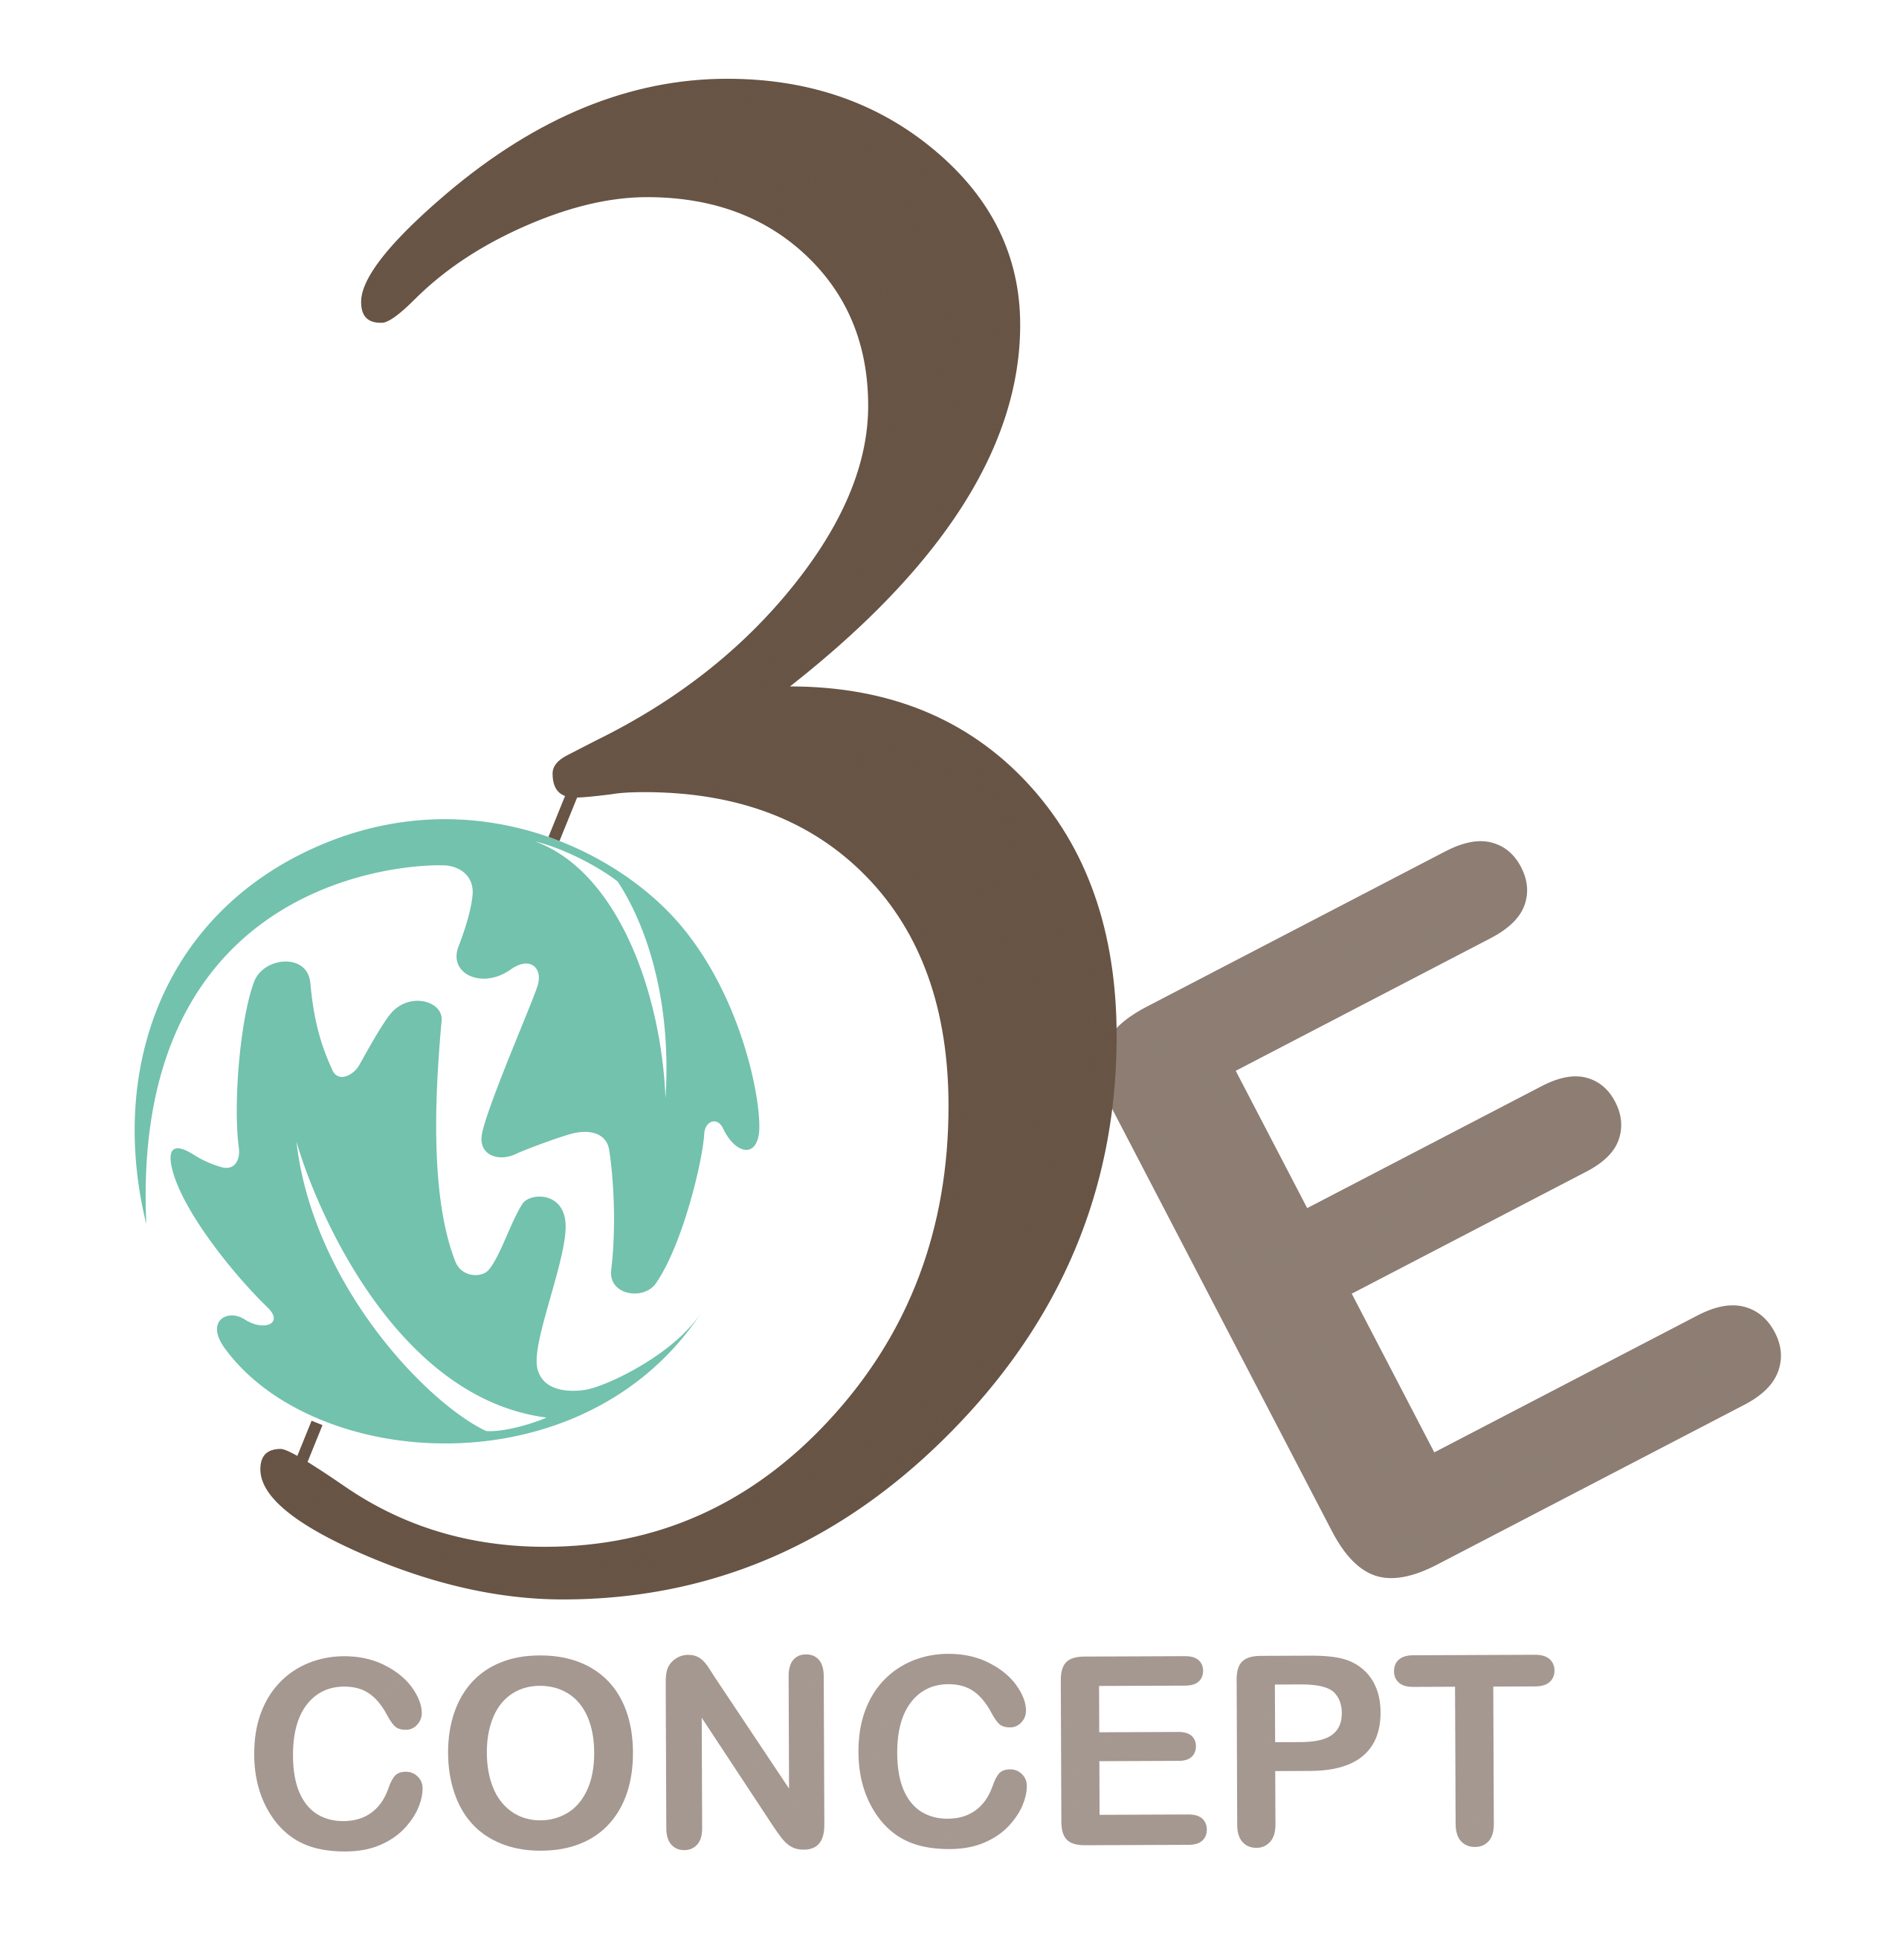 3E Concept